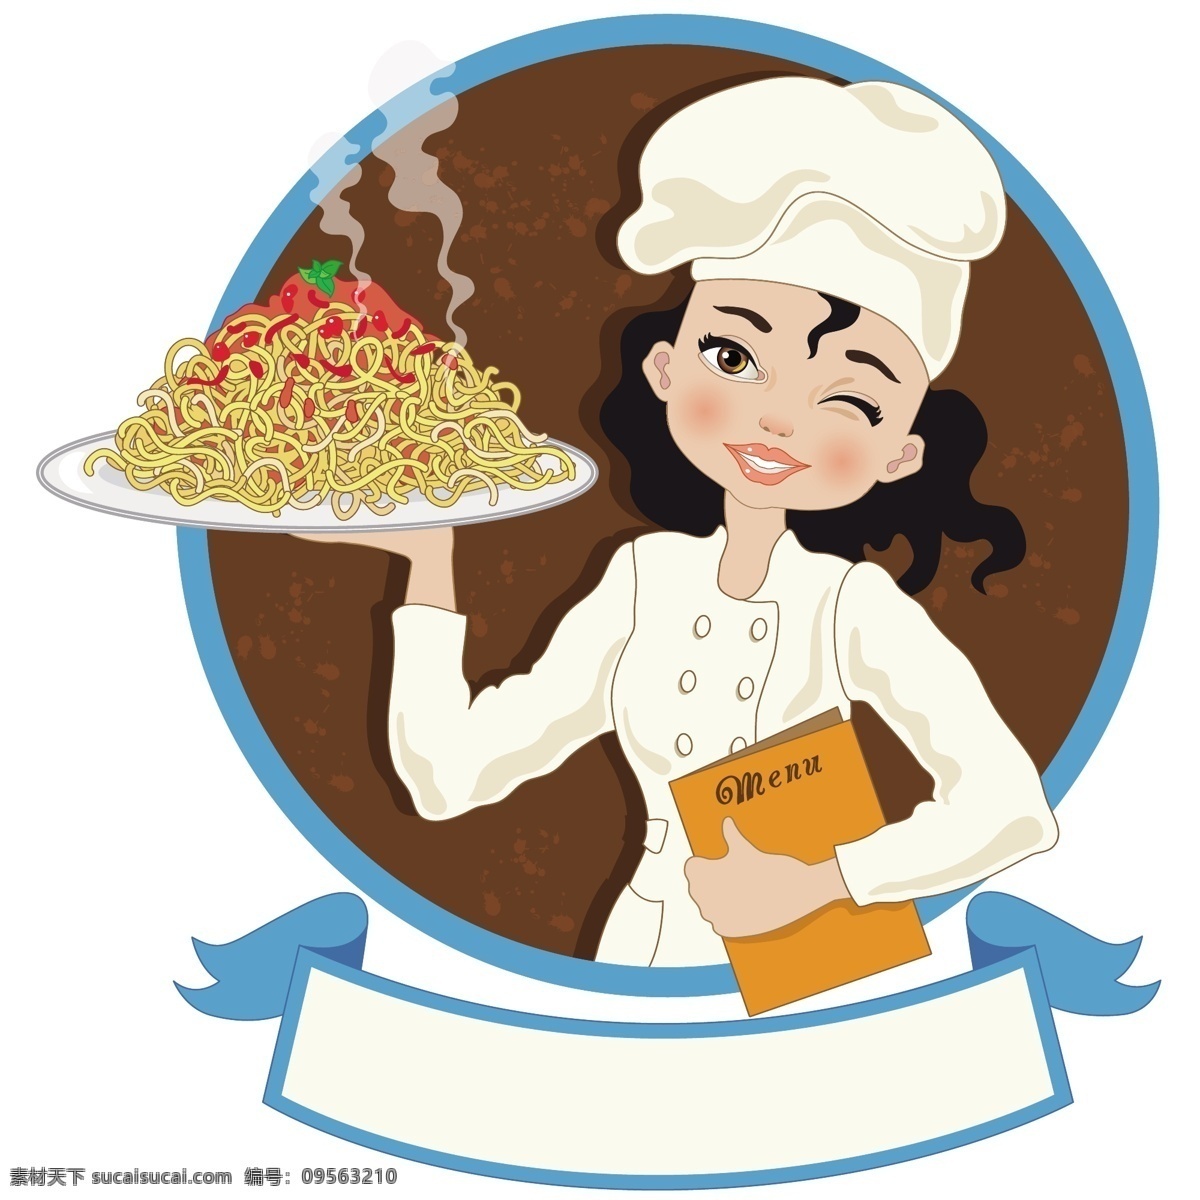 美女 厨师 卡通 矢量 矢量素材 设计素材 背景素材